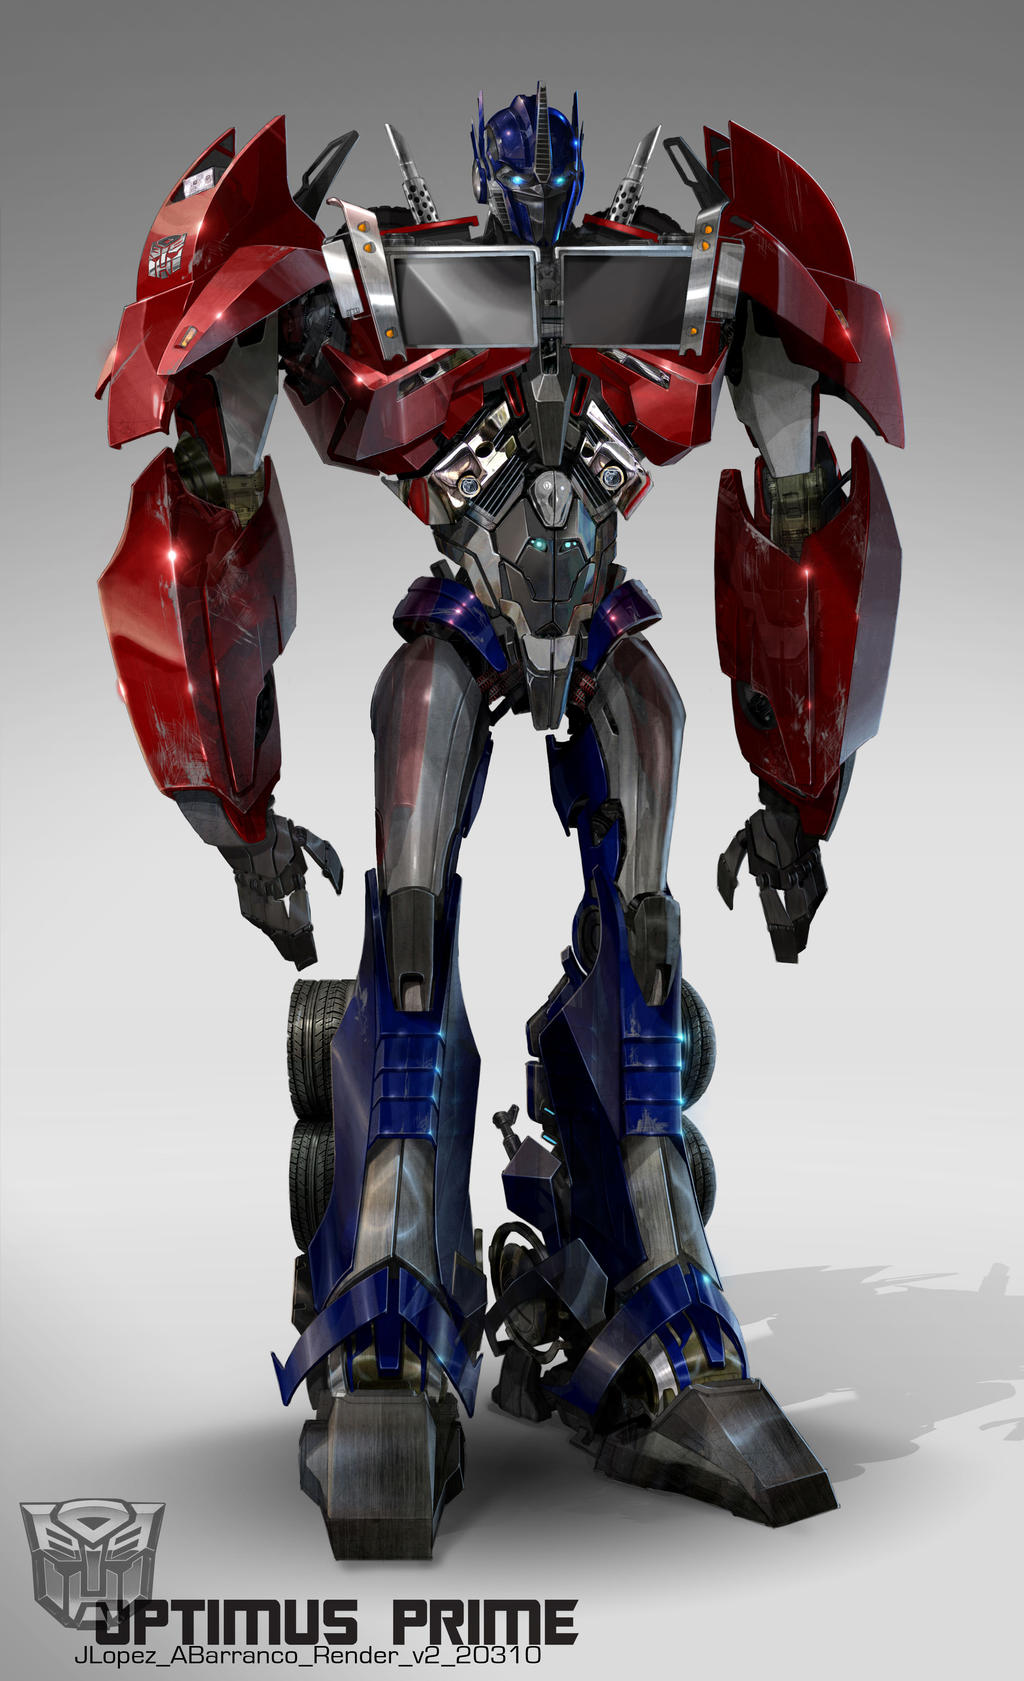 TFP - Optimus prime by GoddessMechanic on deviantART